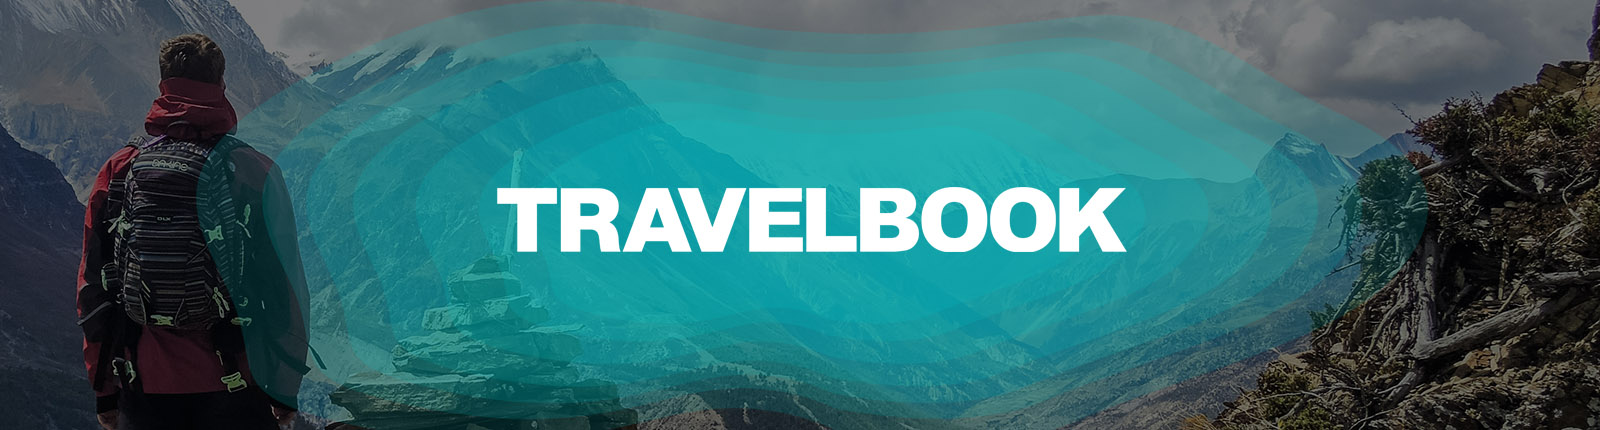 header_travelbook